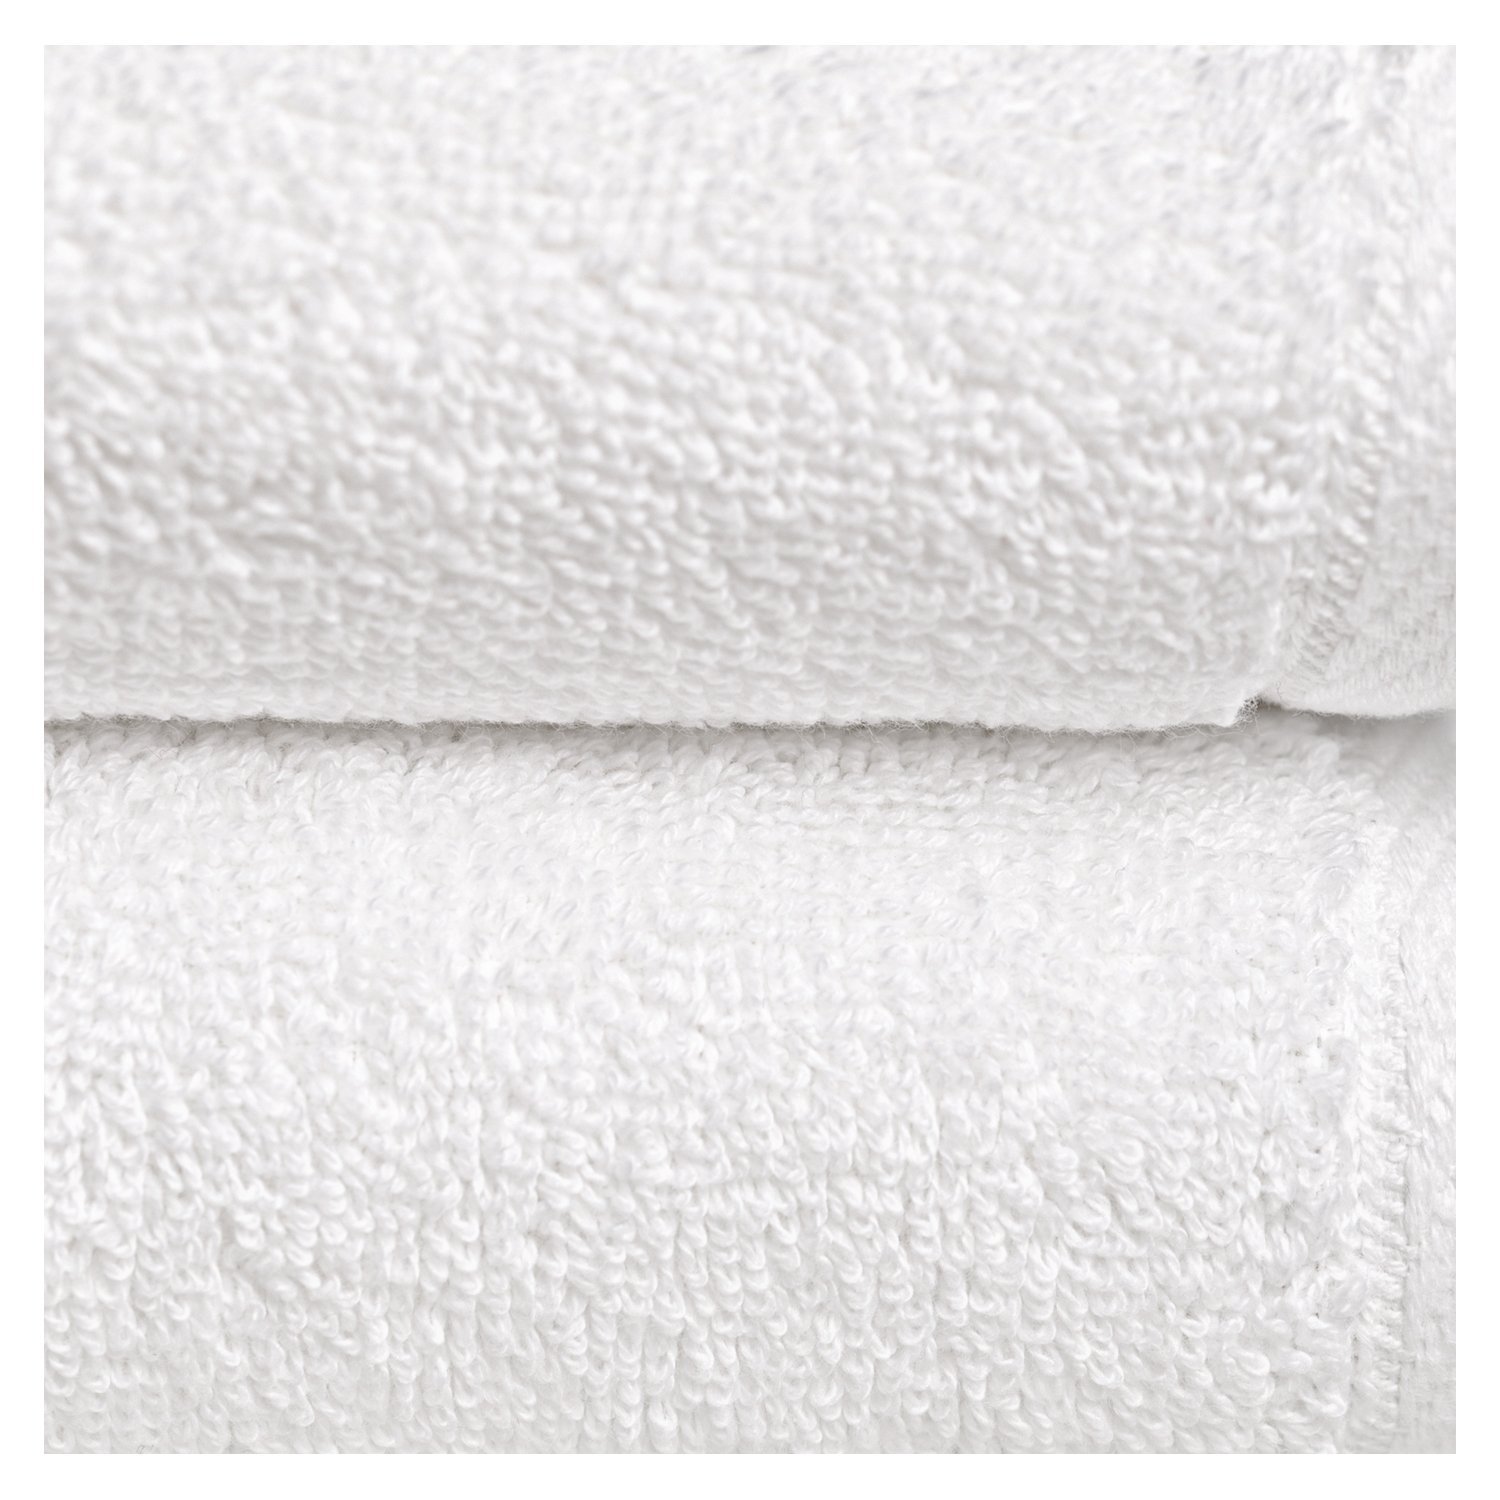 Set de 3 toallas de algodón 600 gr disponible en varias medidas en color  gris pizarra Luxury Boheme